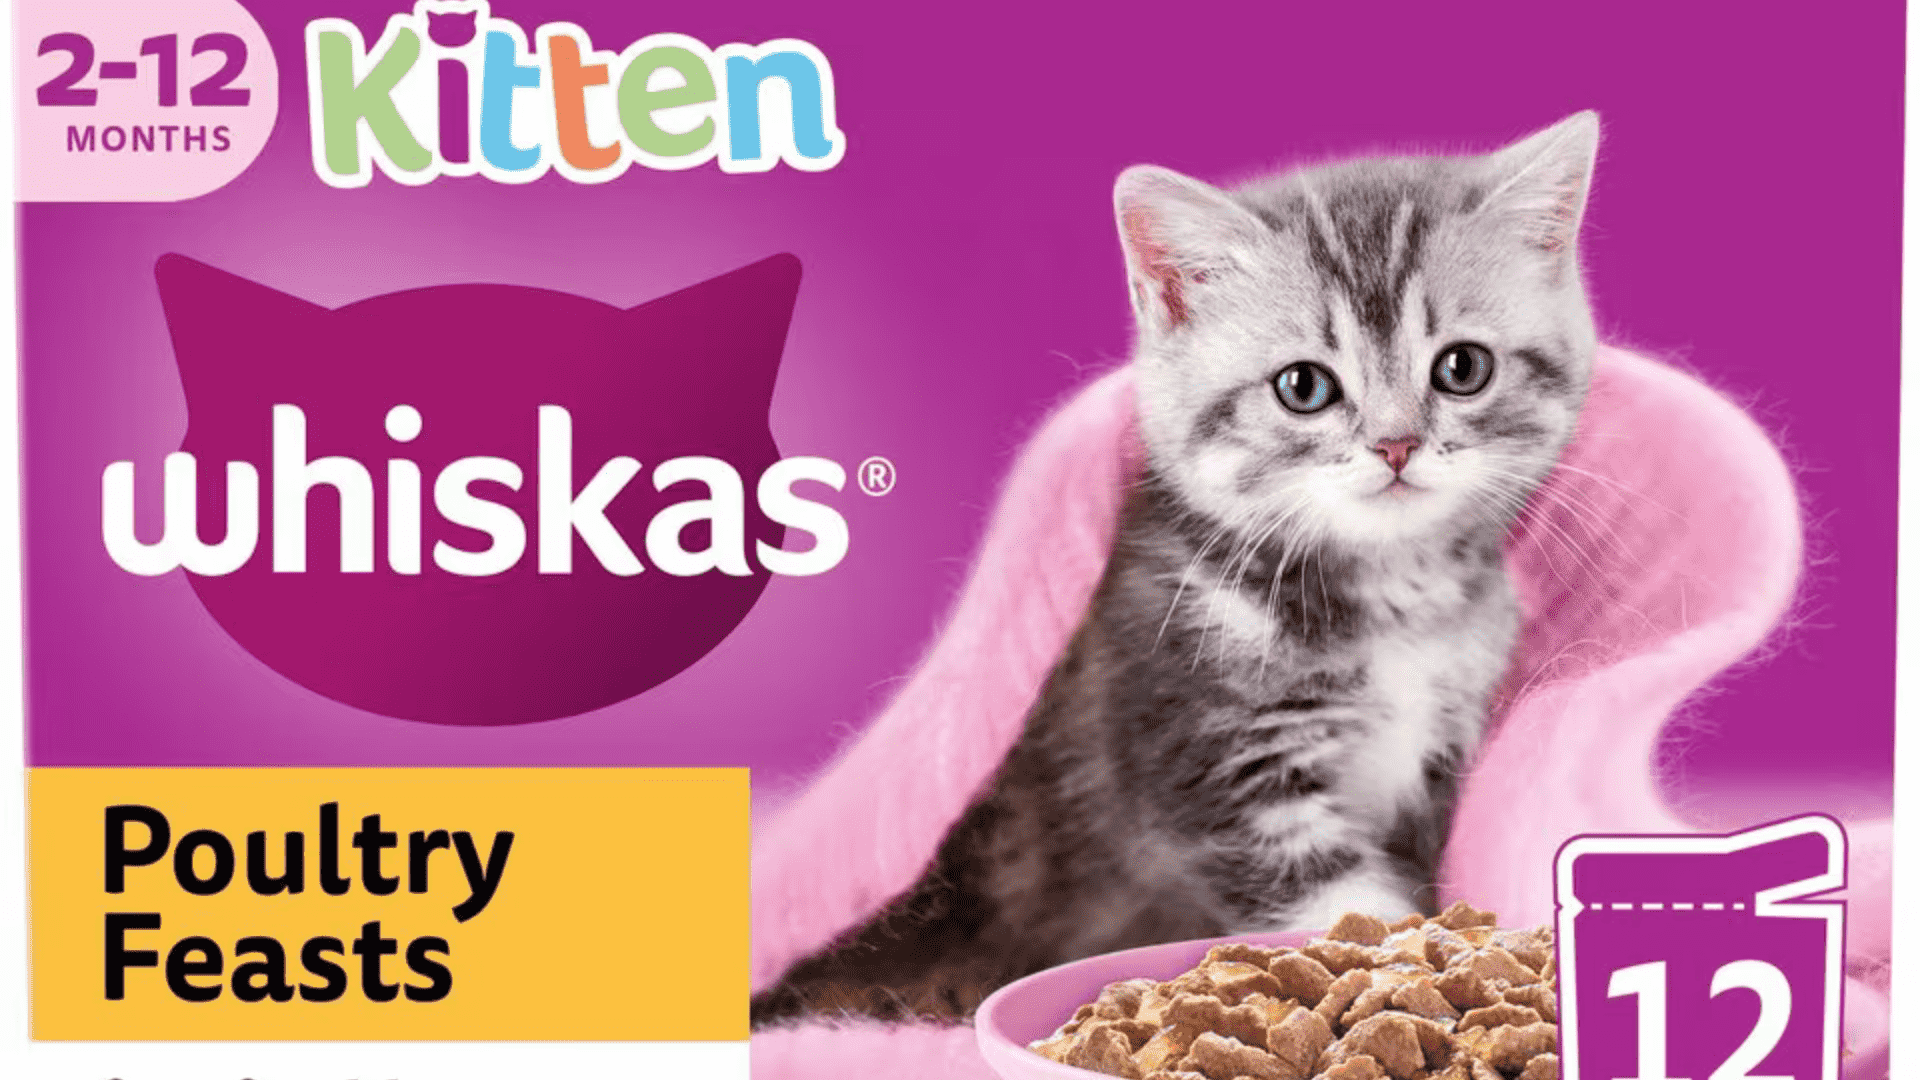 whiskas kitten food